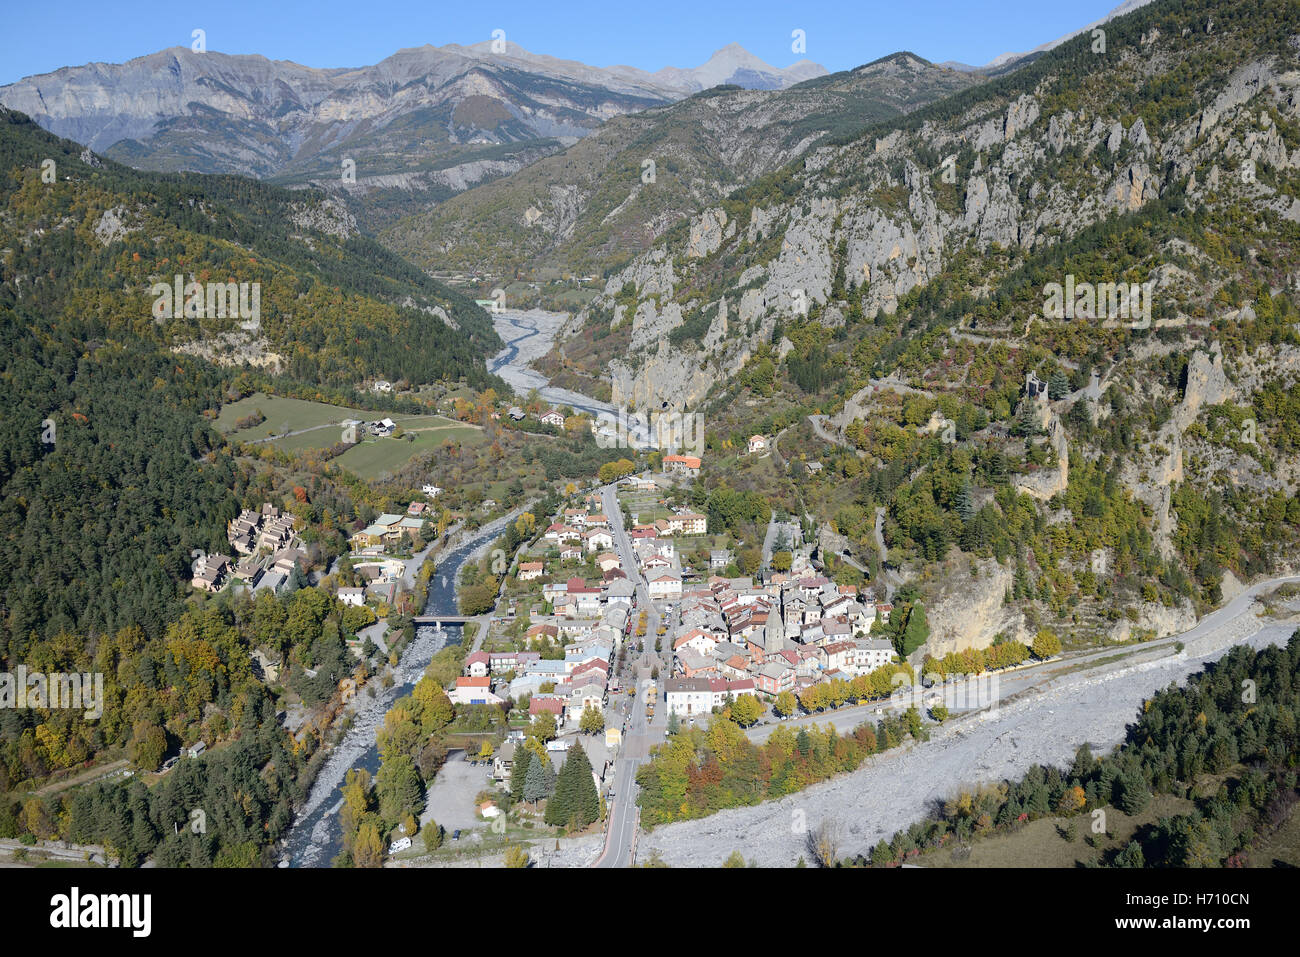 LUFTAUFNAHME. Mittelalterliches Dorf, umgeben von herbstlichen Farben im oberen Var-Tal. Guillaumes, Alpes-Maritimes, Frankreich. Stockfoto